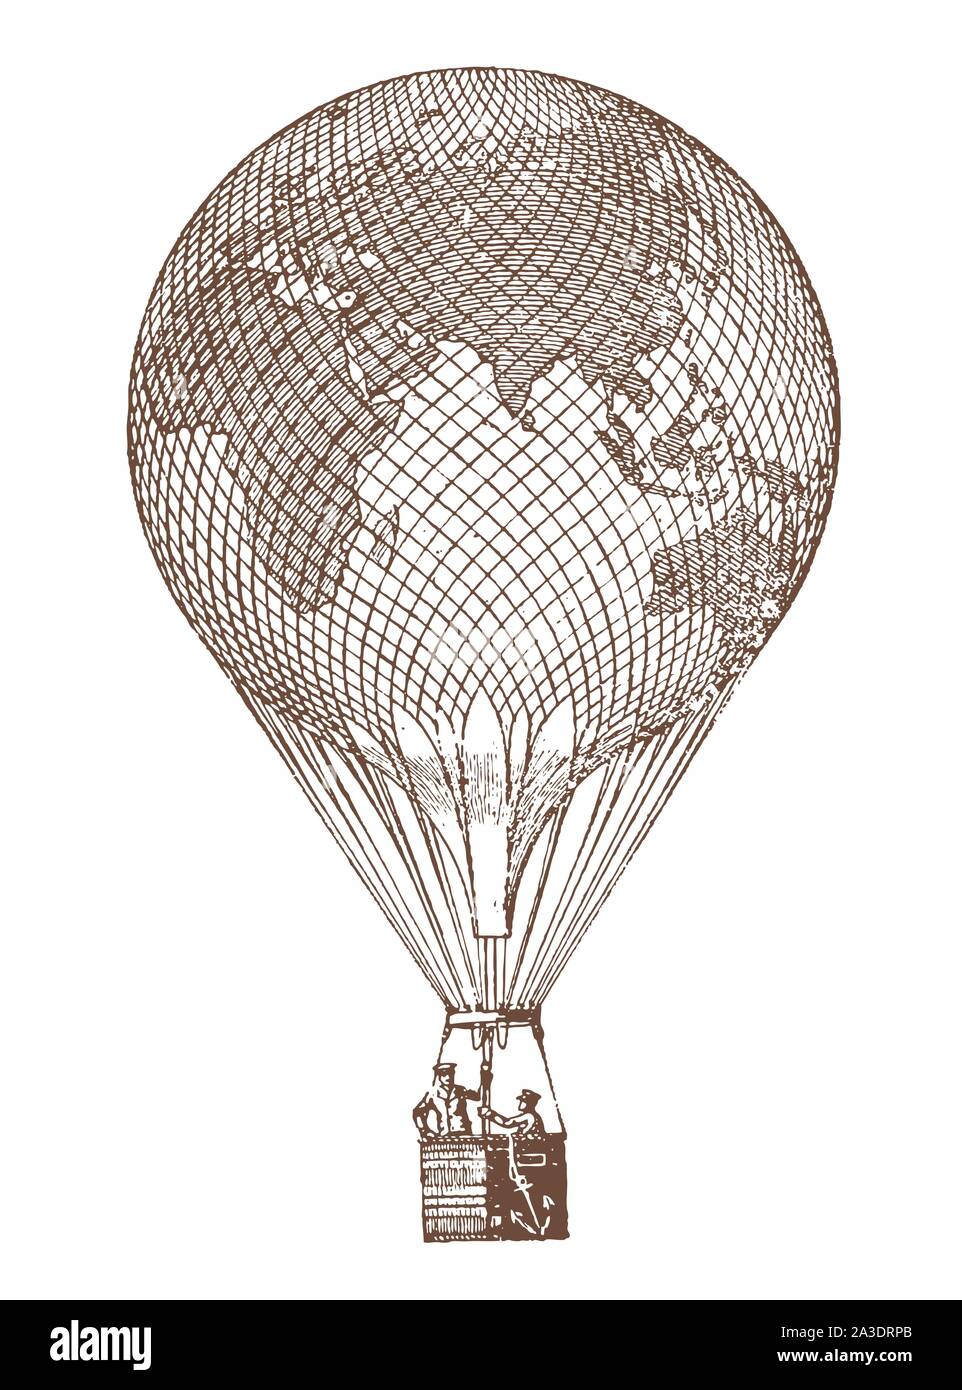 Ballon gaz historique avec la terre site transportant deux hommes. Après une illustration la lithographie du début du xxe siècle Illustration de Vecteur